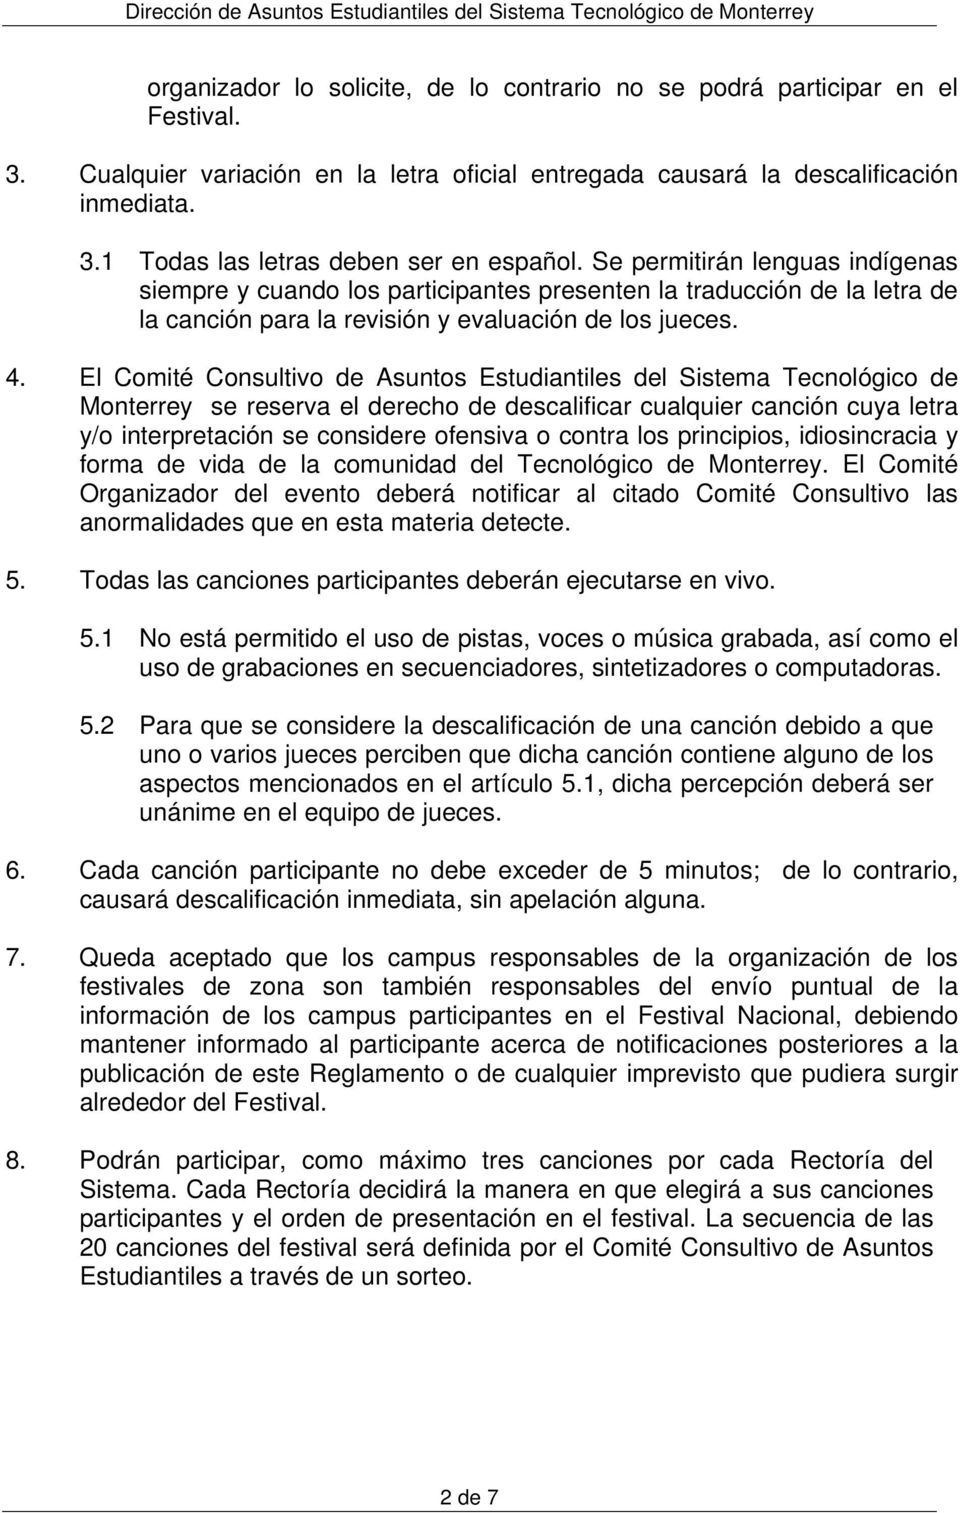 El Comité Consultivo de Asuntos Estudiantiles del Sistema Tecnológico de Monterrey se reserva el derecho de descalificar cualquier canción cuya letra y/o interpretación se considere ofensiva o contra